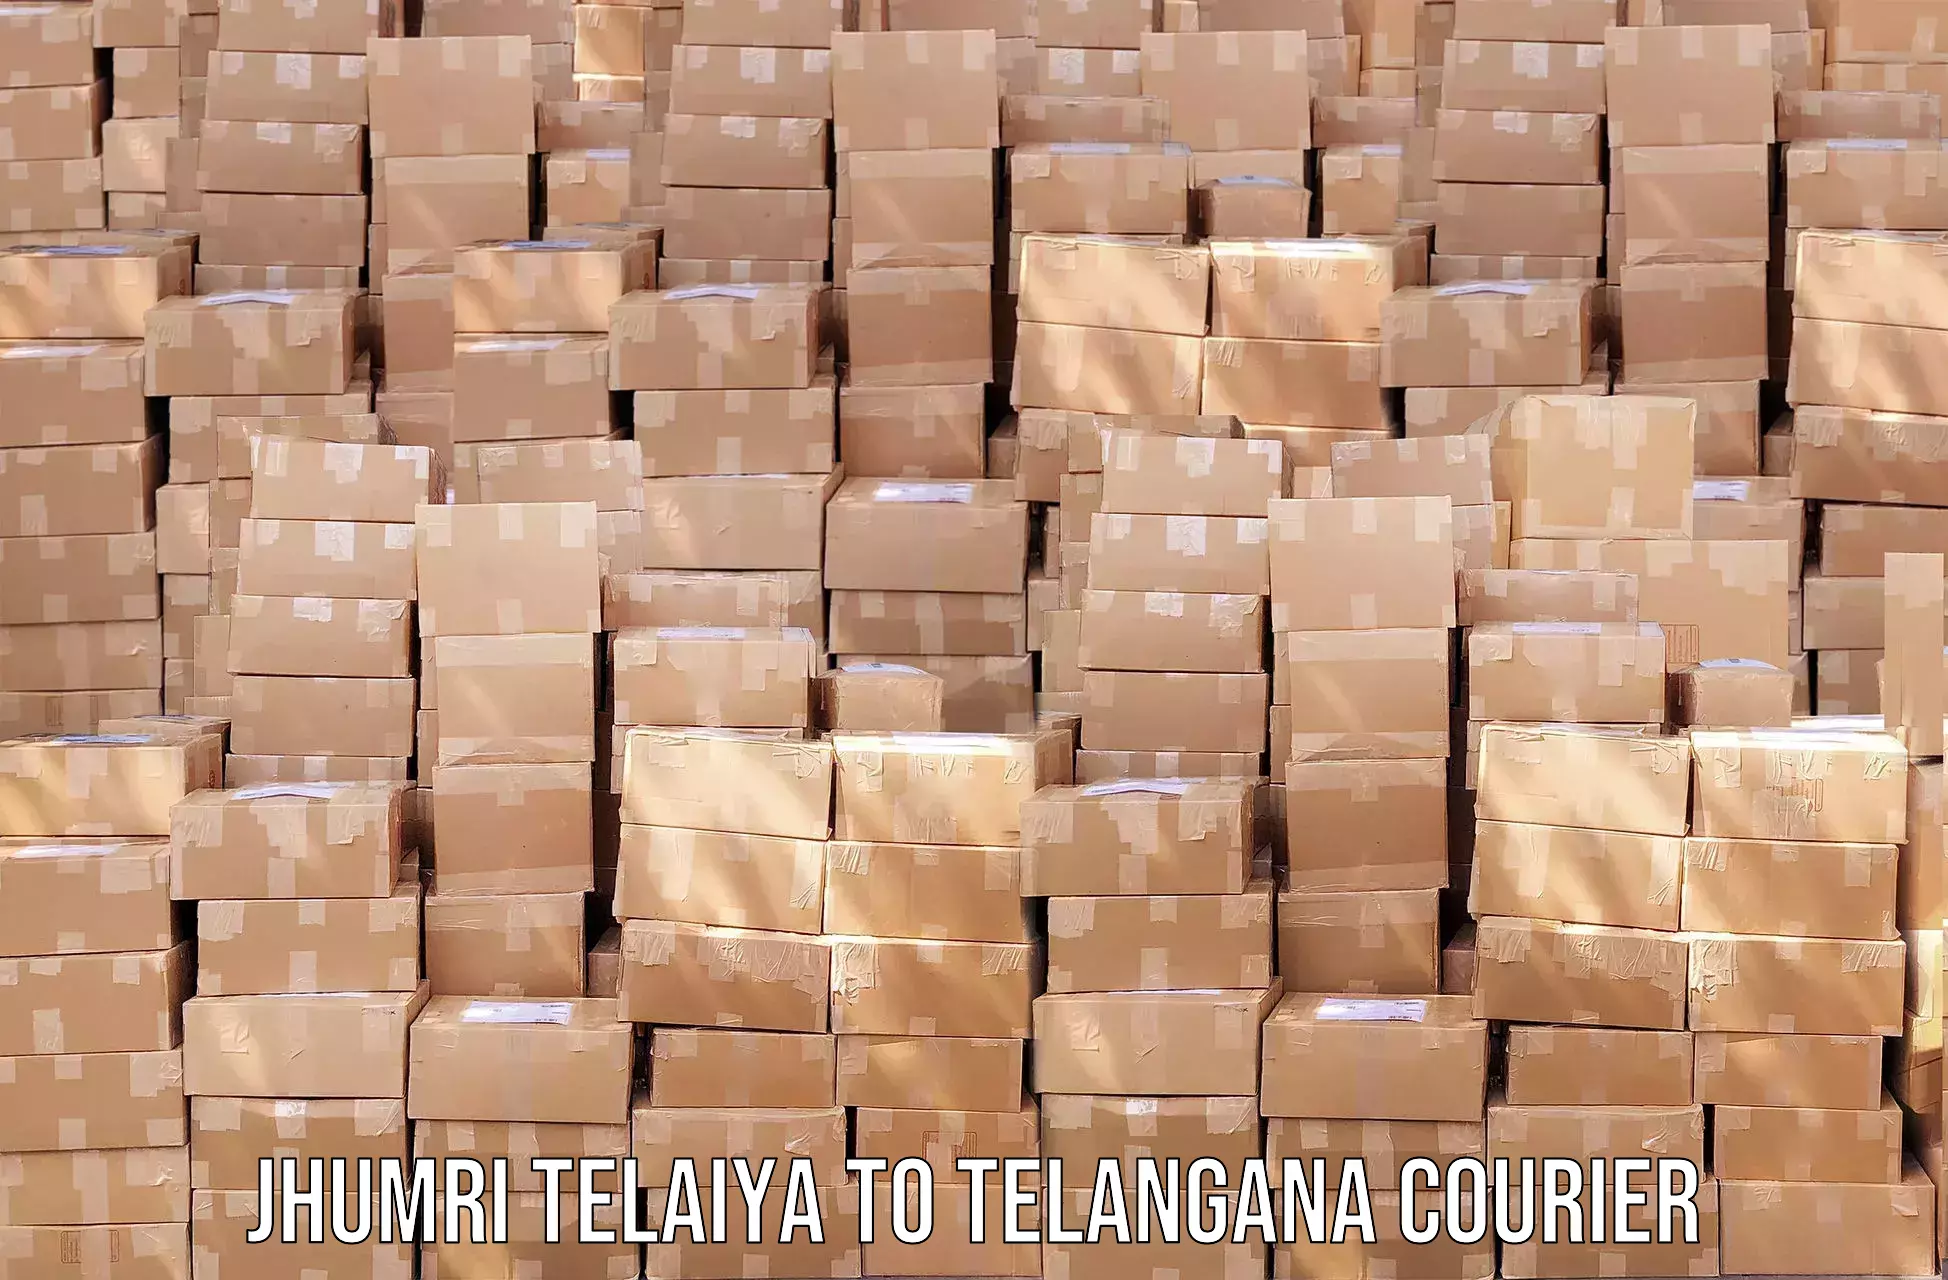 Local courier options Jhumri Telaiya to Tadvai